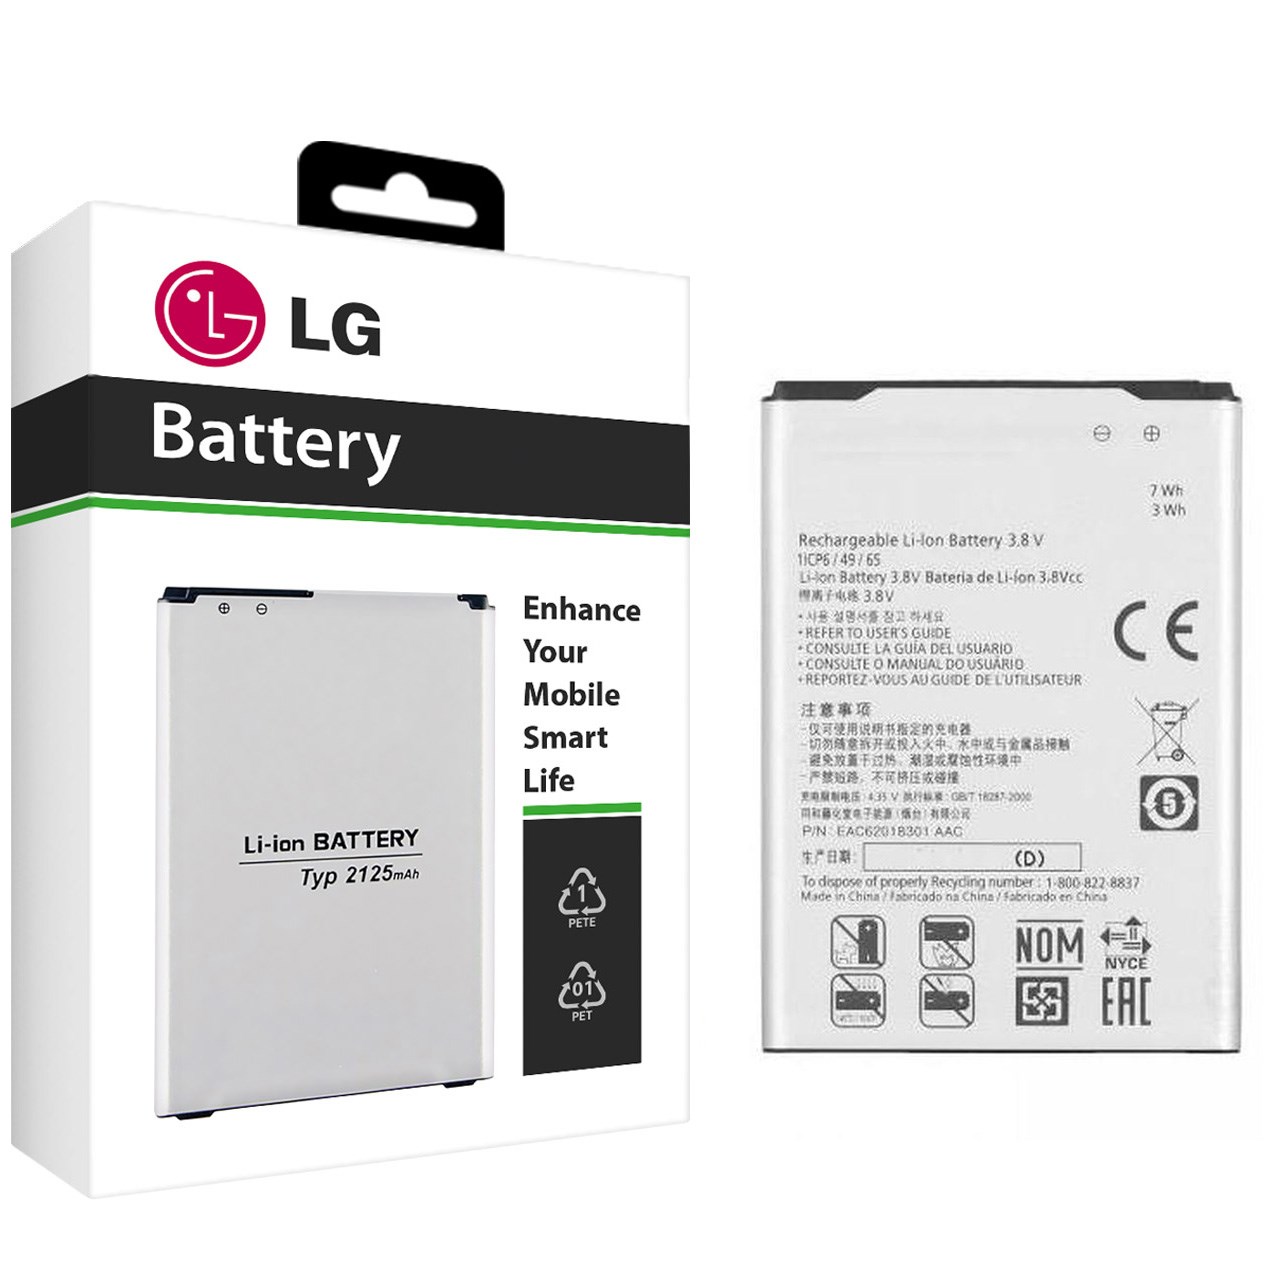 باتری موبایل ال جی مدل BL-54SH با ظرفیت 2540mAh مناسب برای گوشی موبایل ال جی L90